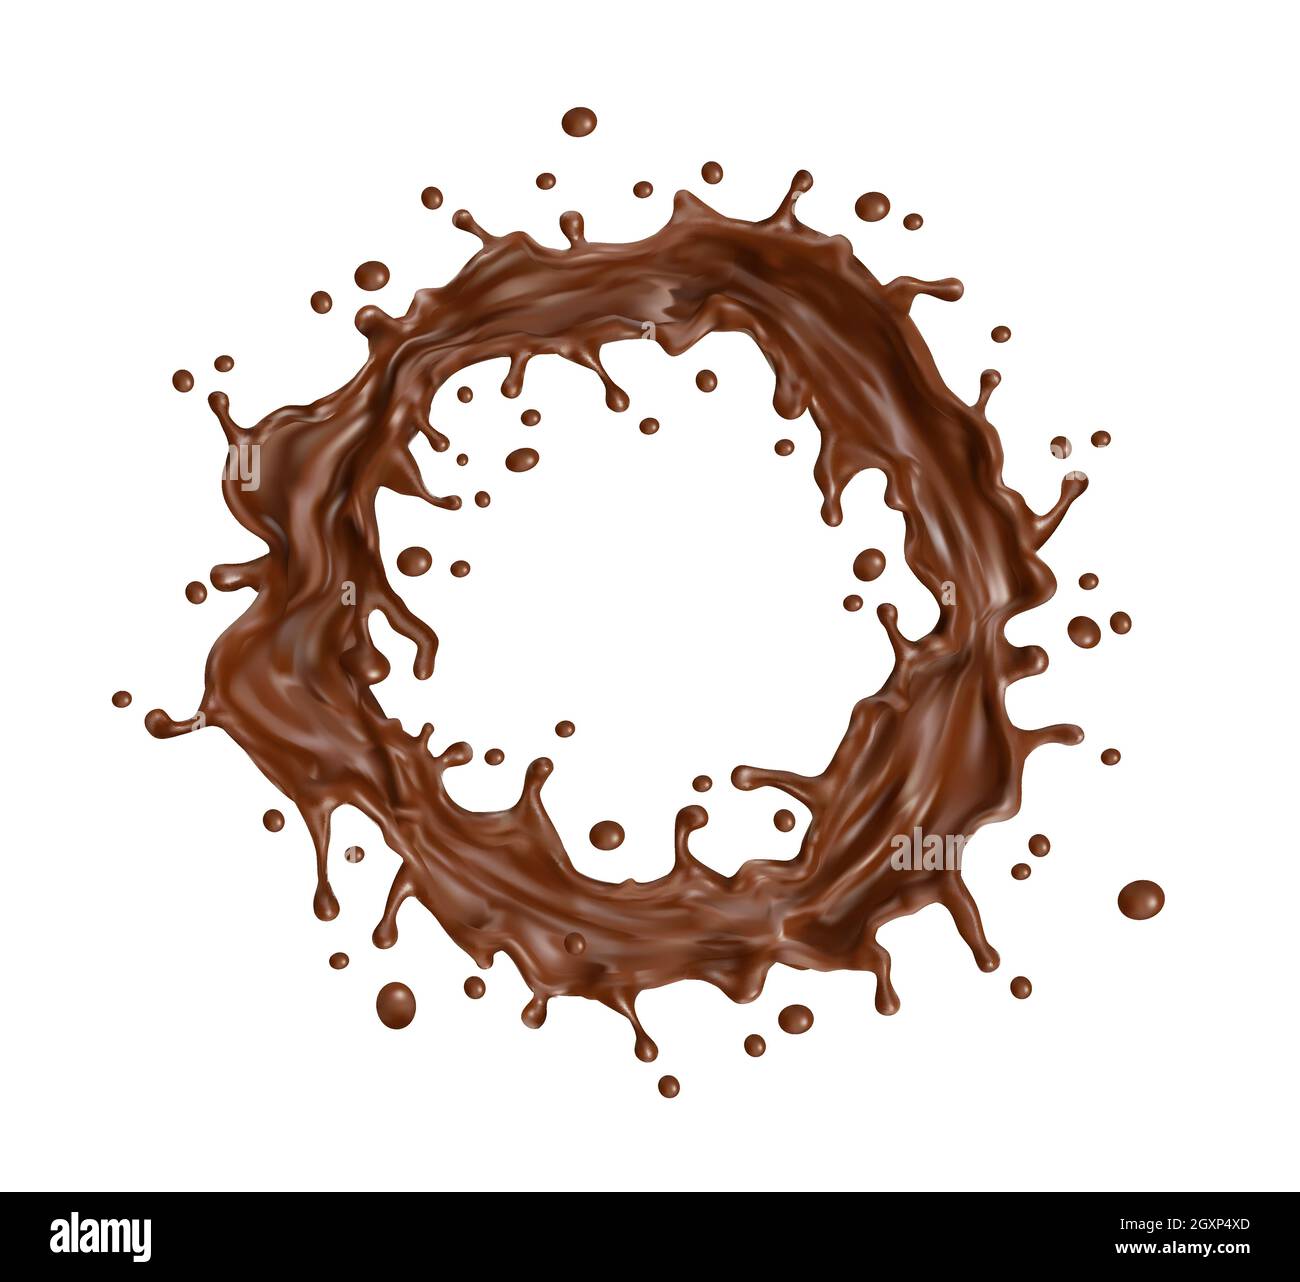 Schokolade Milch runden Twister oder Wirbel Spritzer mit Spritzern.  Geschmolzene und flüssige heiße Schokolade wirbeln, 3d realistische Vektor  Dessert Kakao trinken oder zu konfekten Stock-Vektorgrafik - Alamy